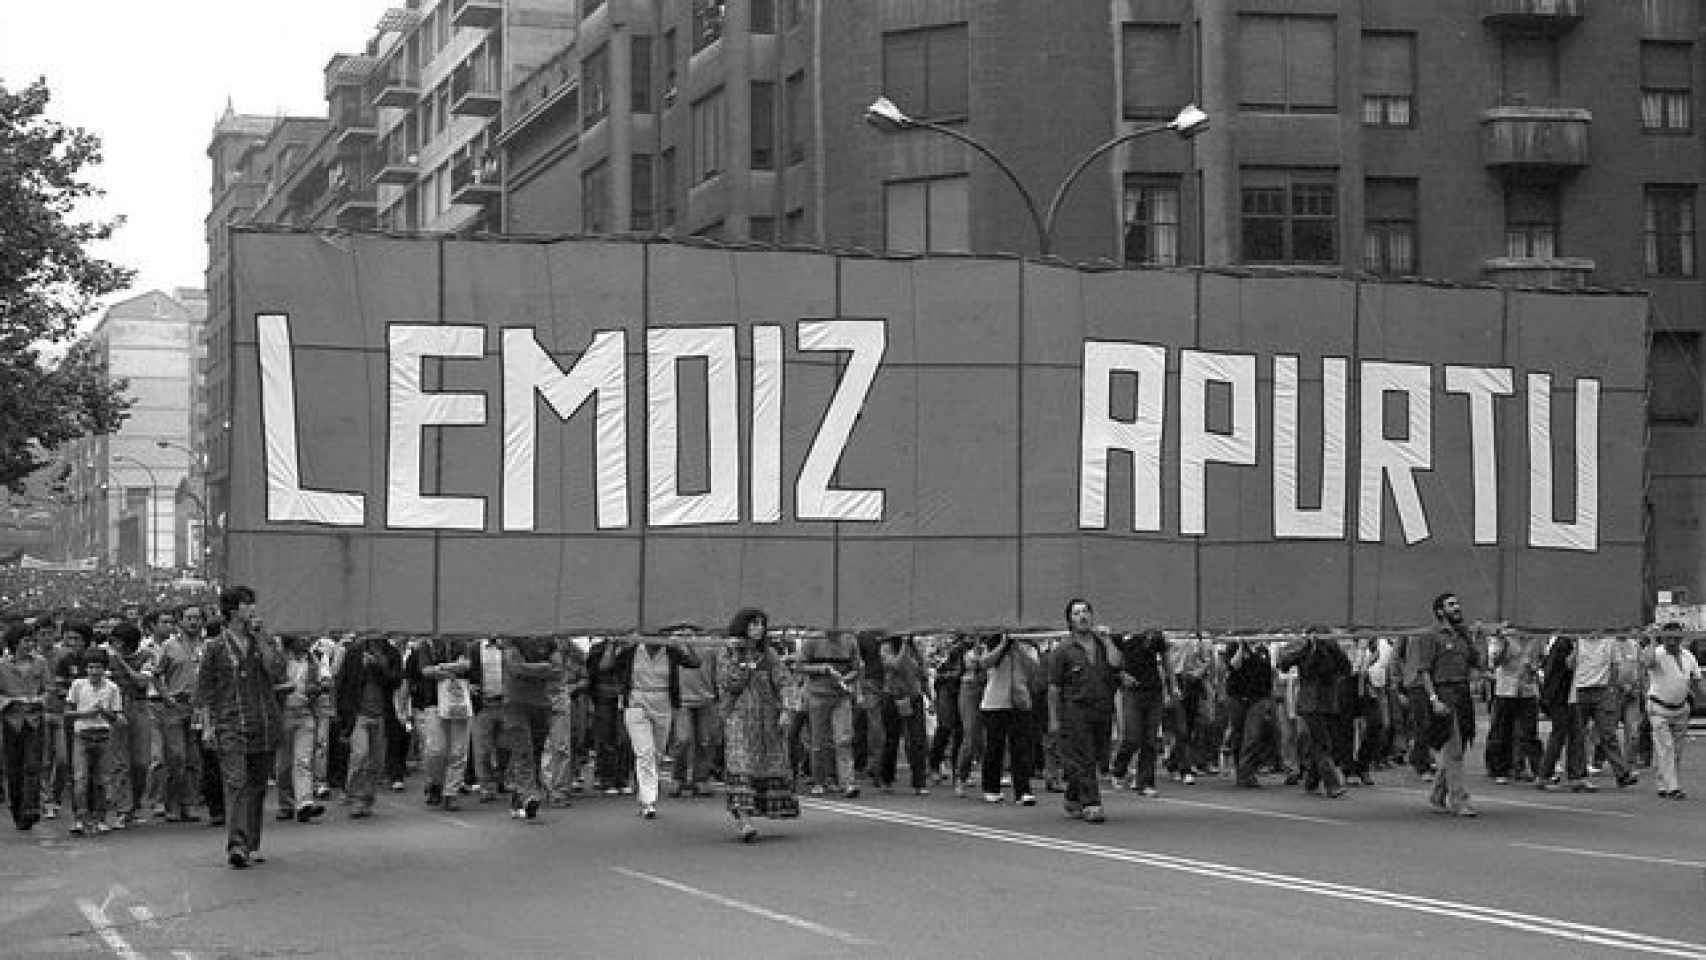 Imagen de archivo de una de las movilizaciones contra la central nuclear de Lemoiz. / CV